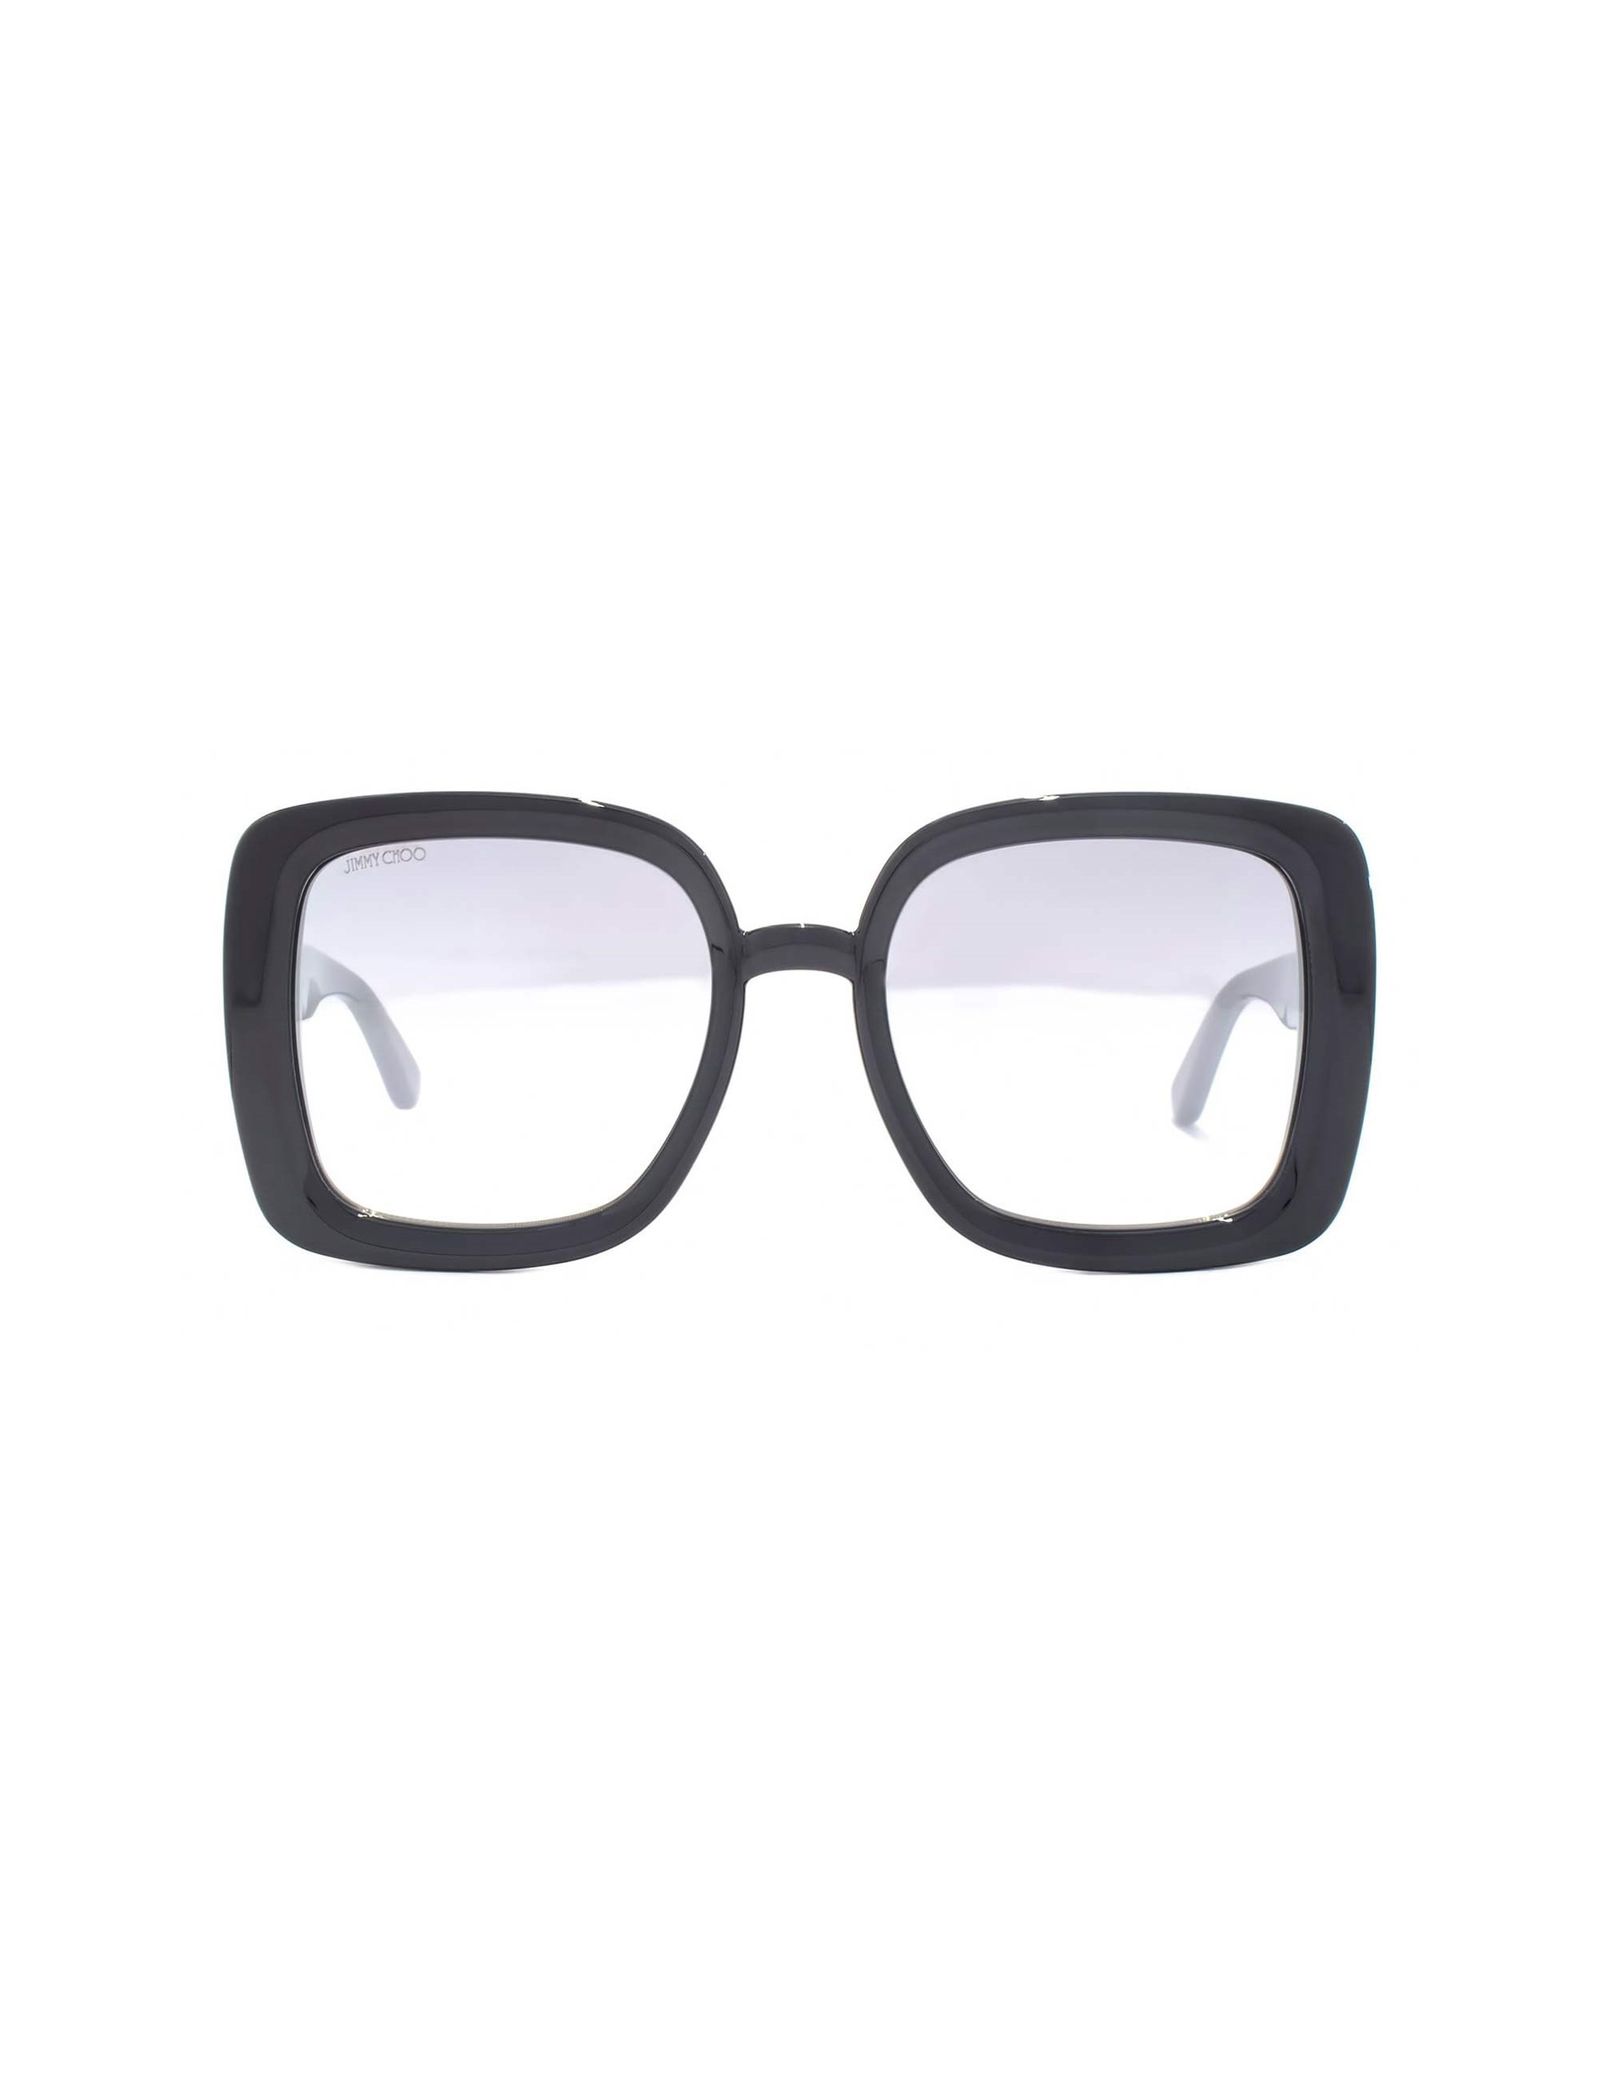 عینک آفتابی مربع بزرگسال - جیمی چو - مشکي - 2